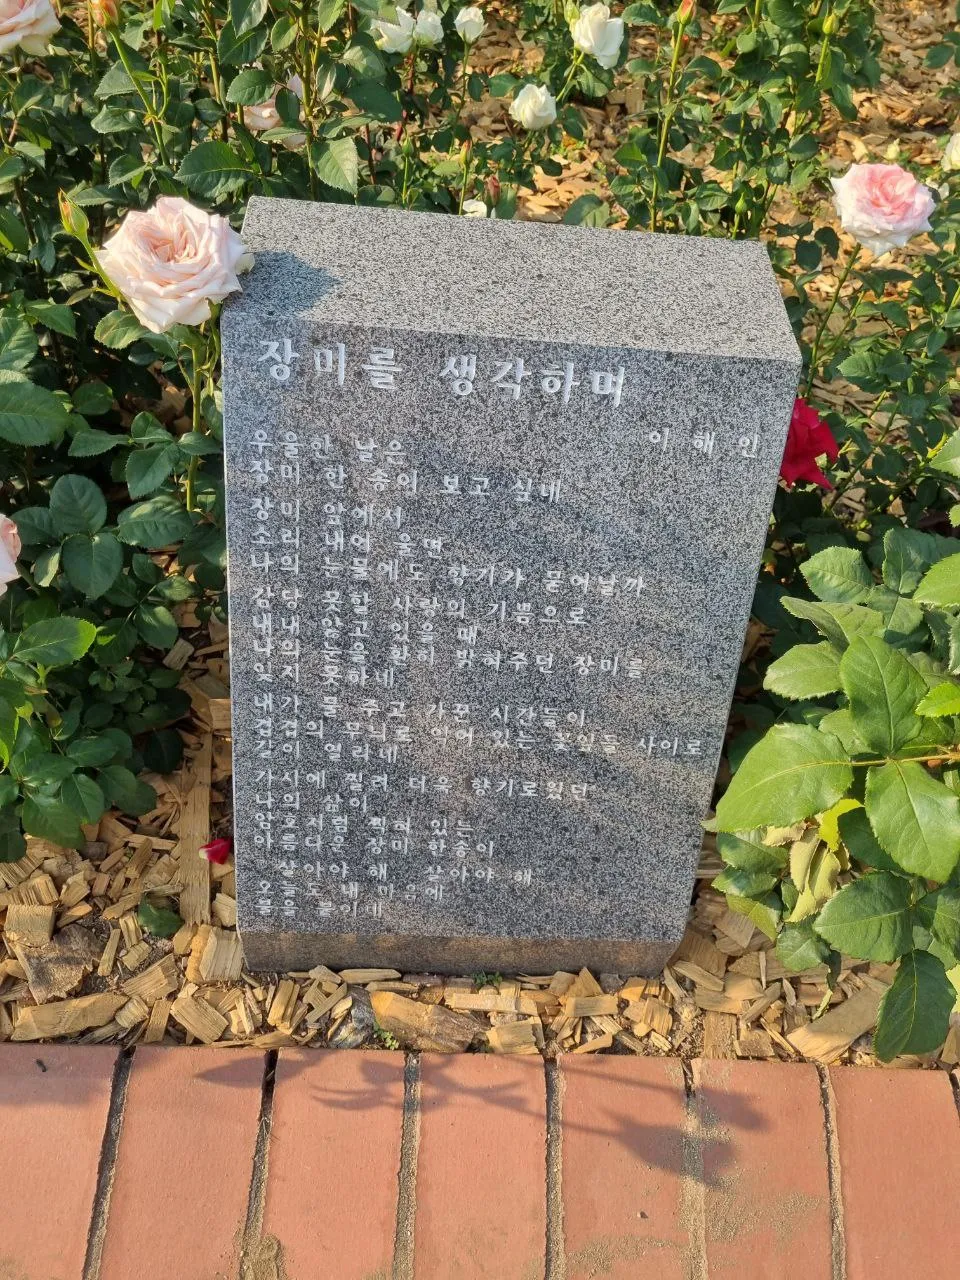 
Фестиваль роз в Корее 2022